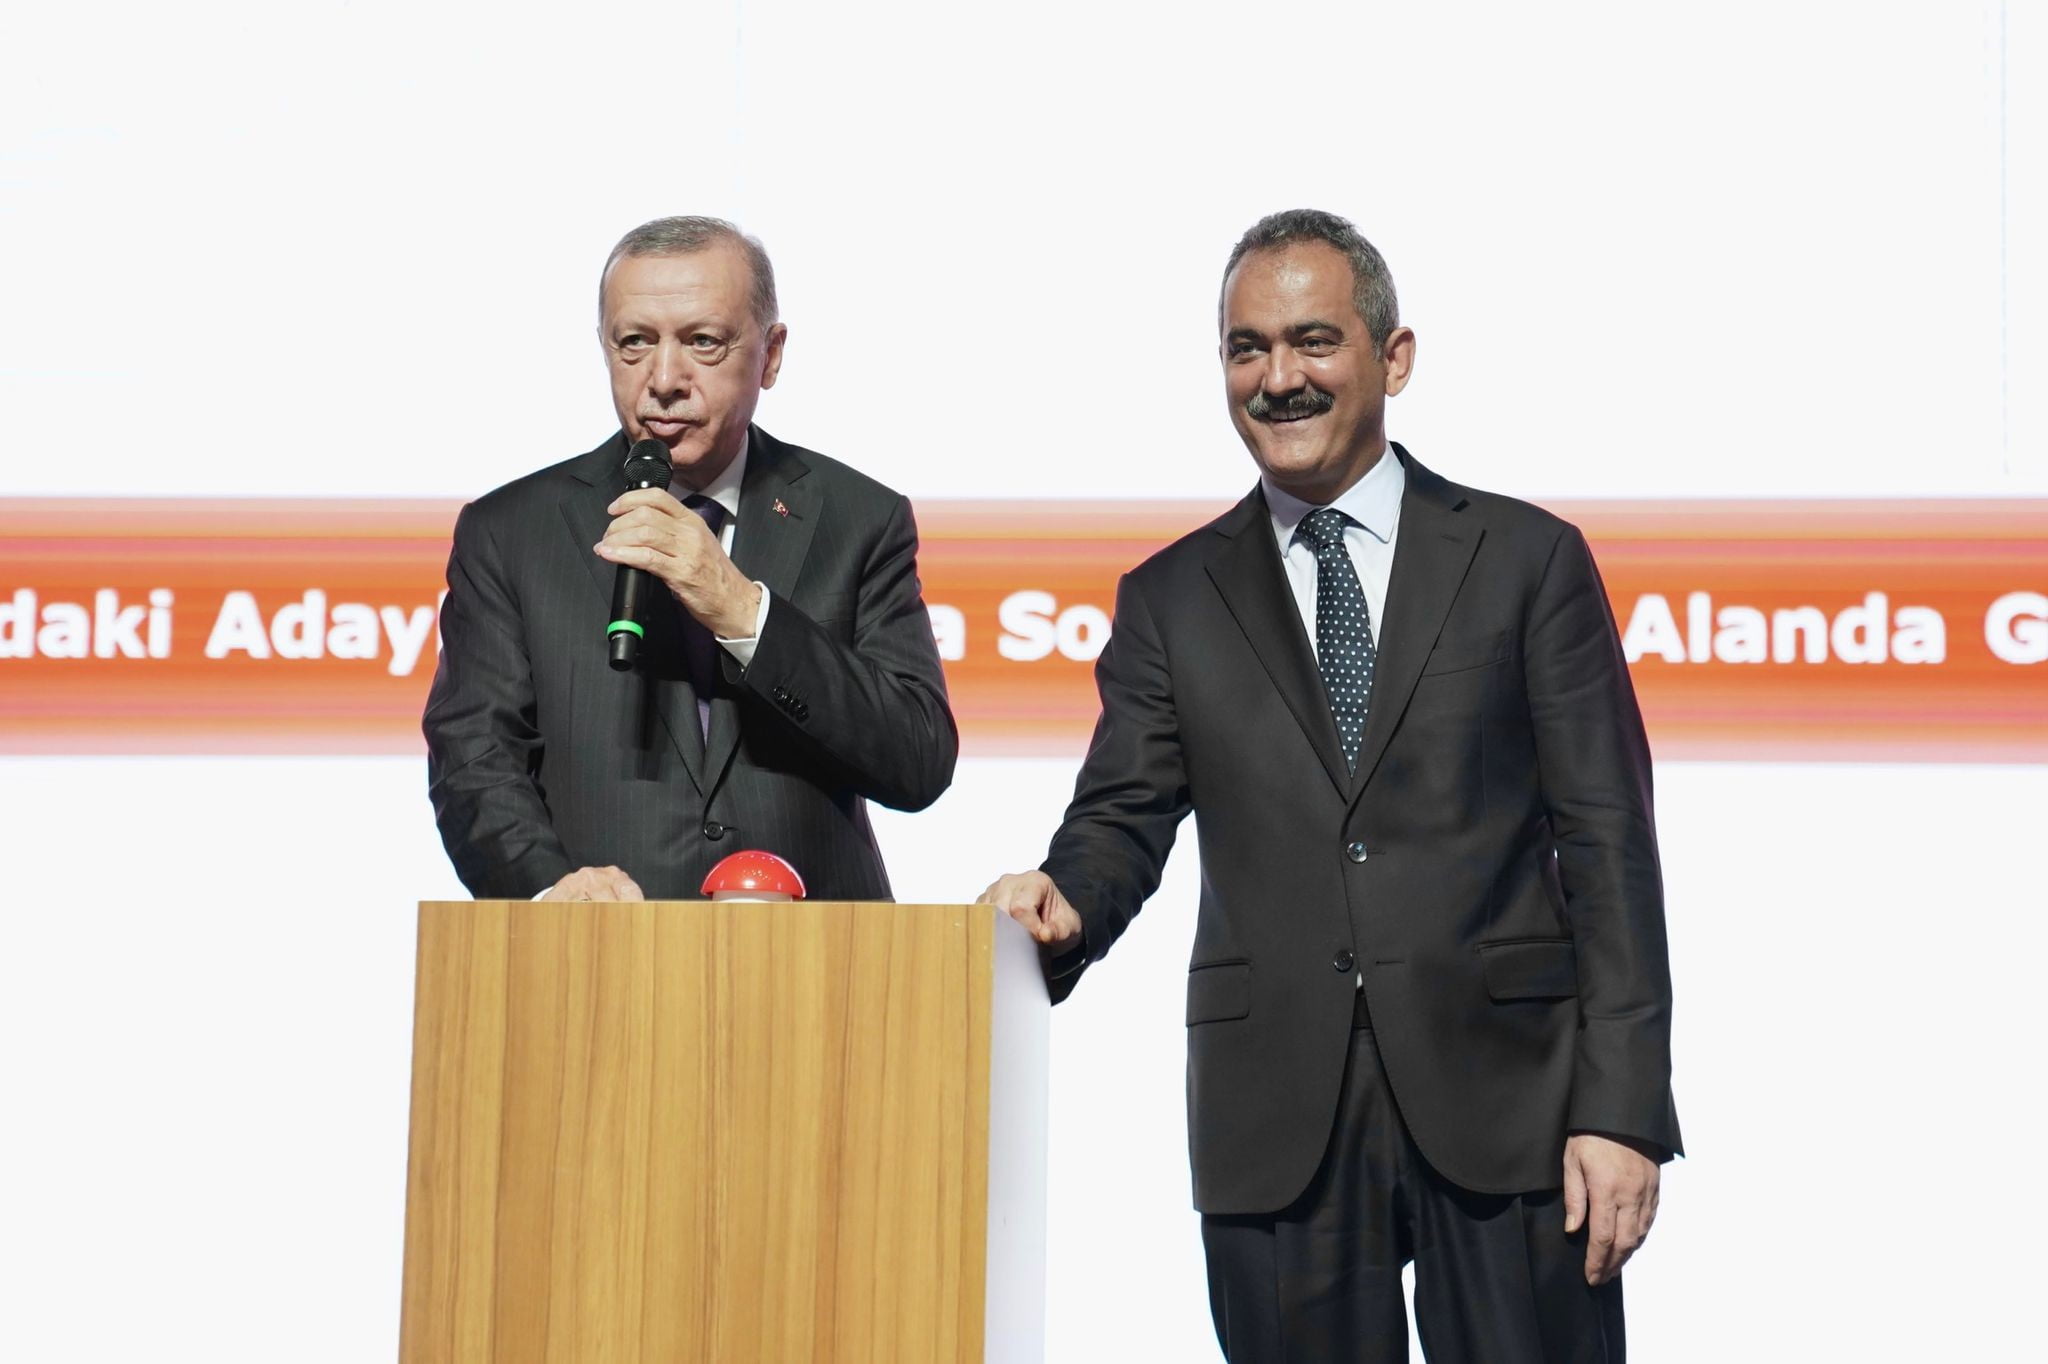 Cumhurbaşkanı Erdoğan: 'Eğitimi siyasete meze yapmak doğru yaklaşım değildir'